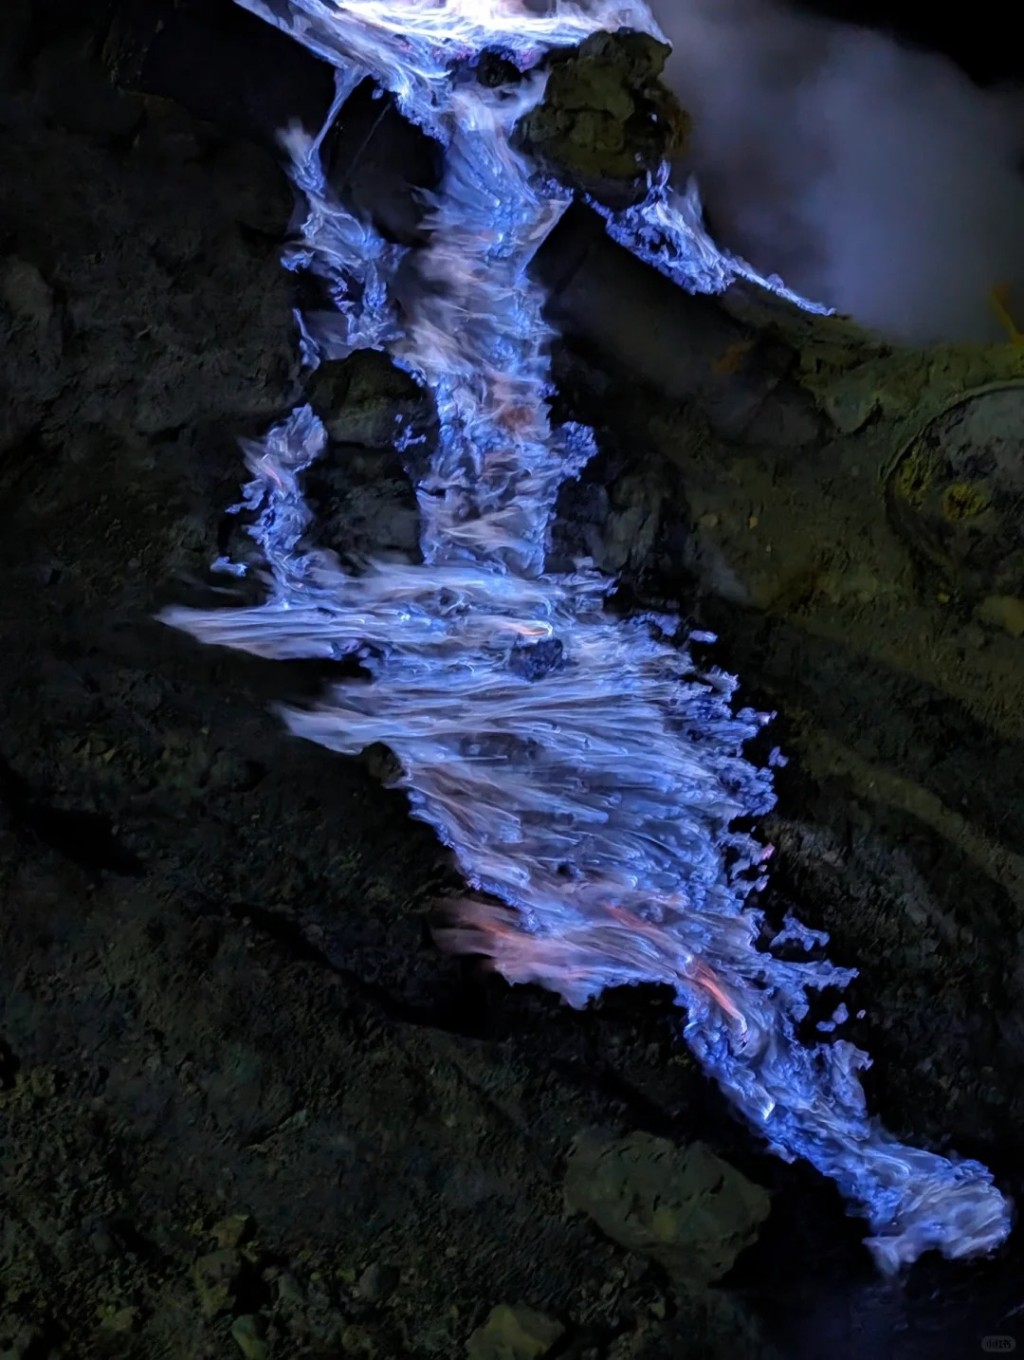 到印尼「伊真火山」有「全世界唯二能看见蓝色火焰的地方」。小红书